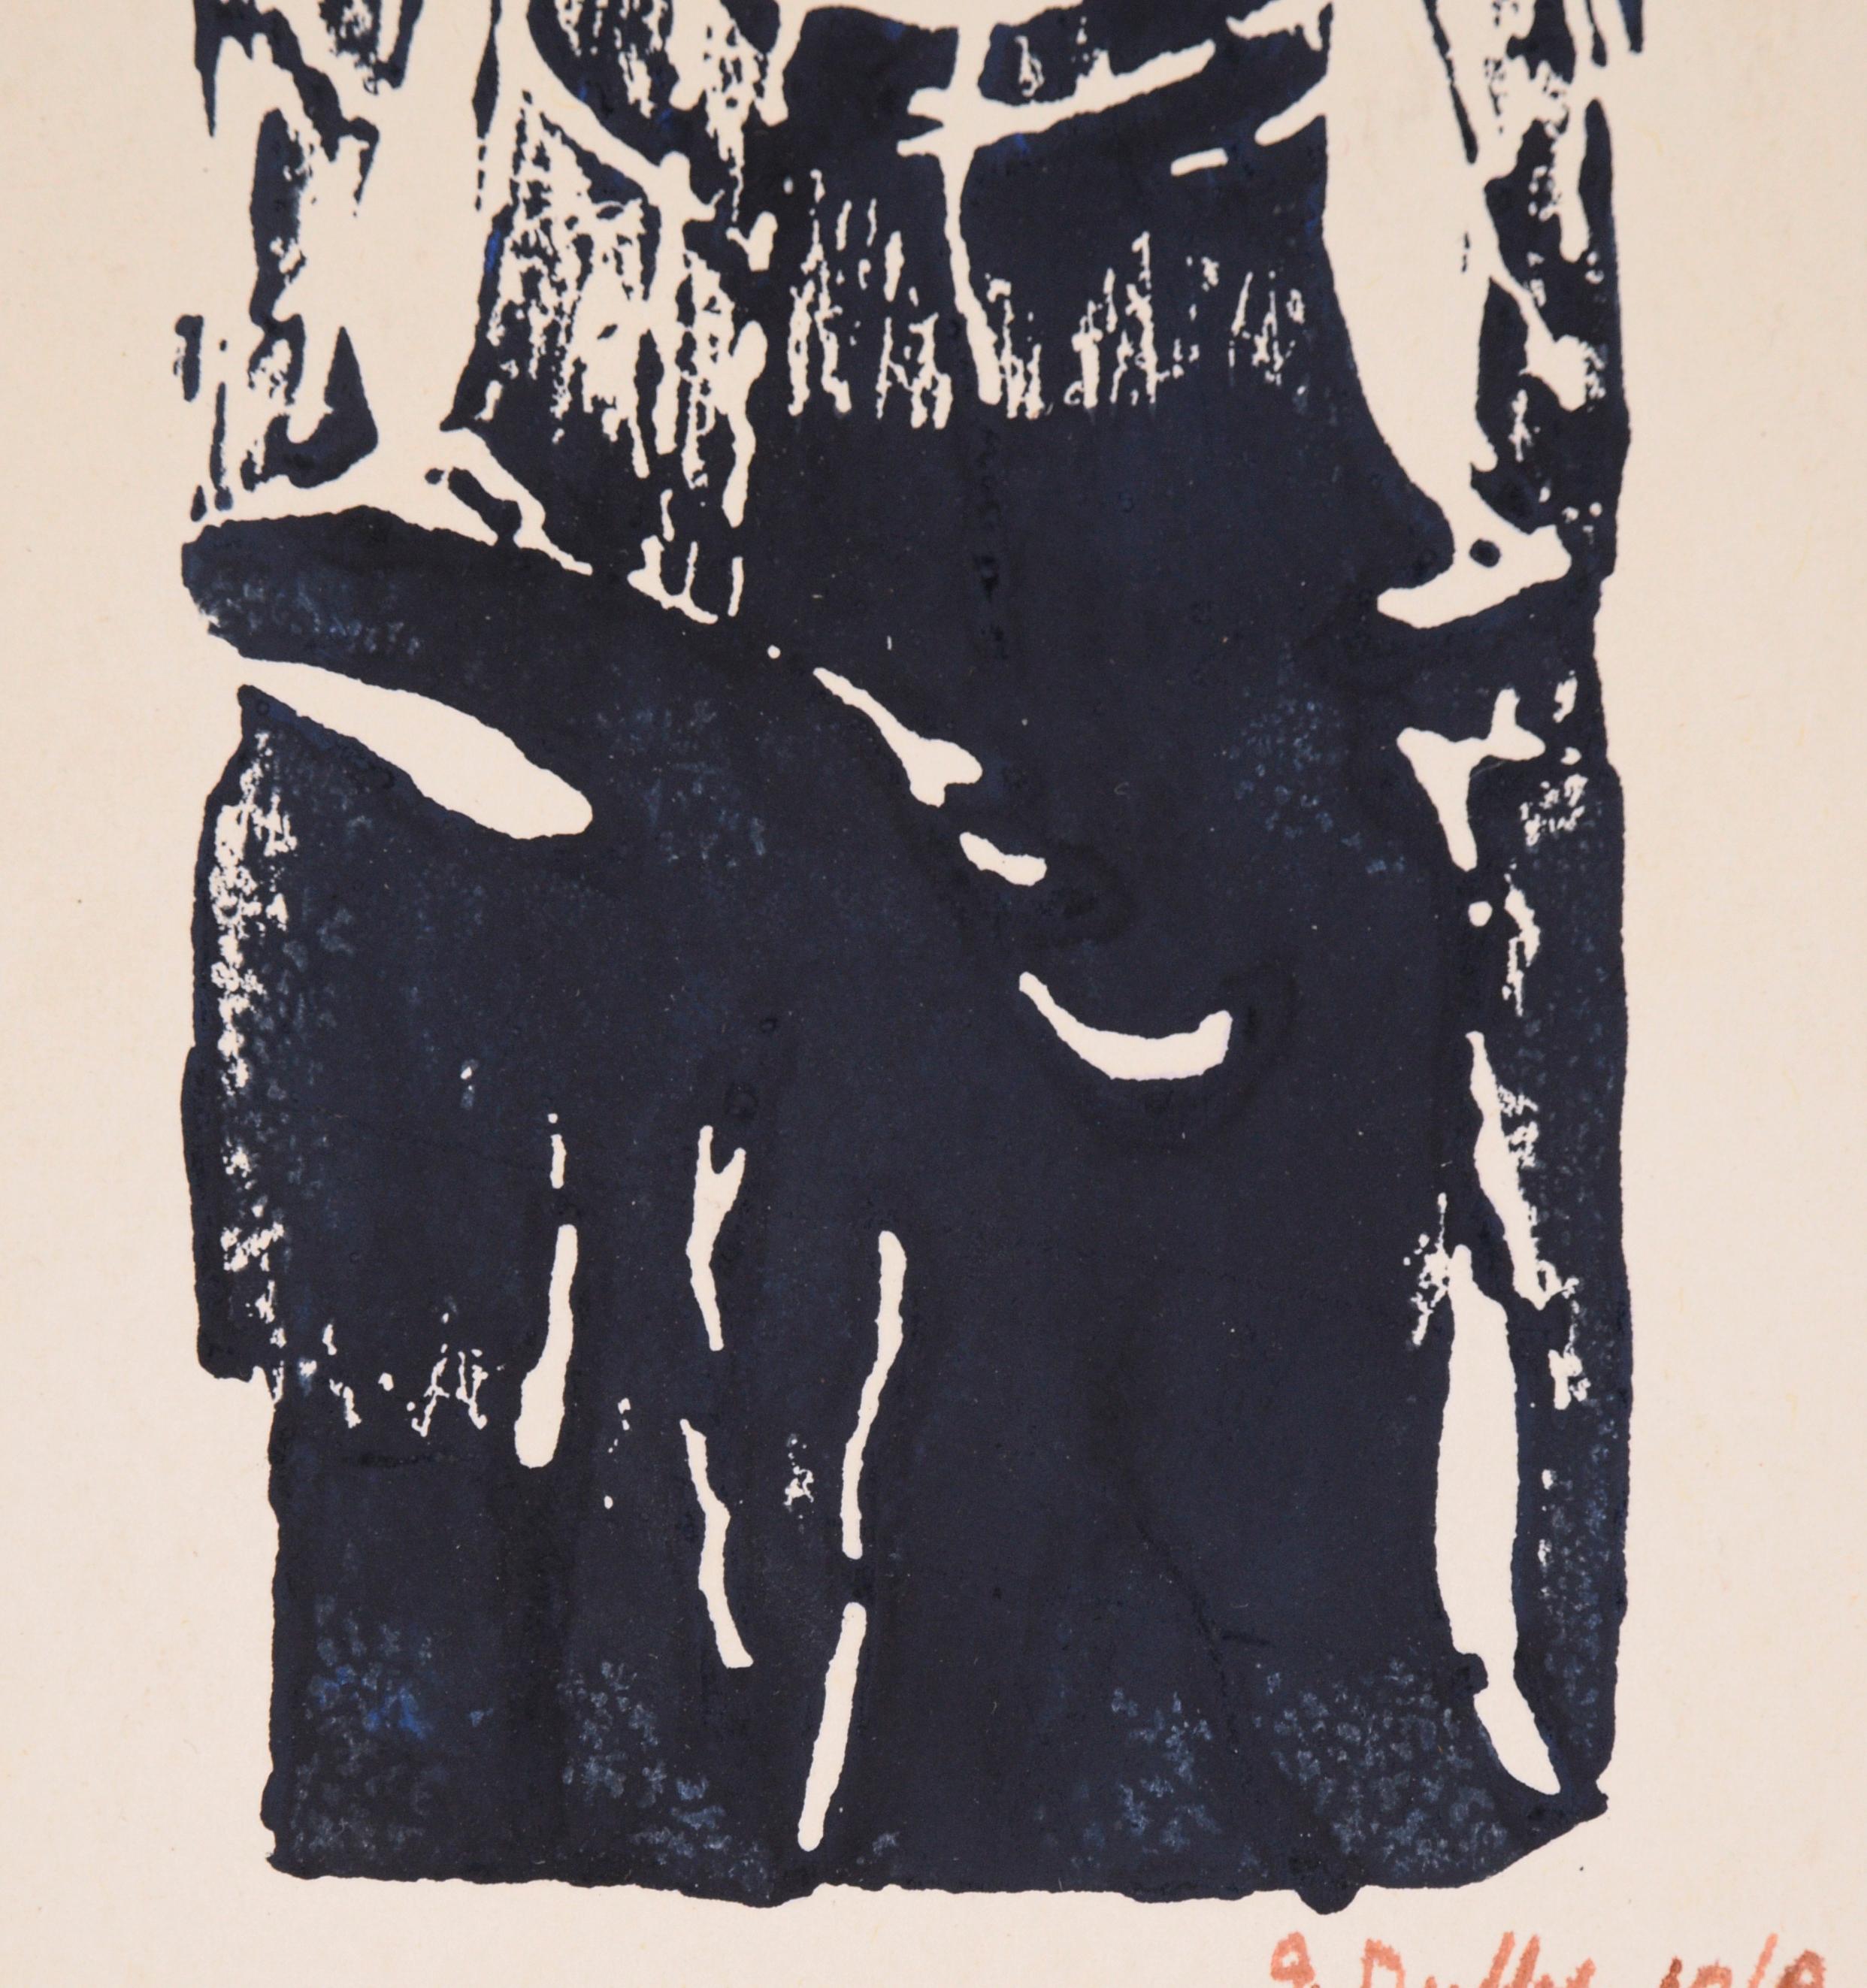 Kühnes Holzschnittbild einer Frau von J. Duffy (Amerikaner, 20. Jahrhundert). Das Motiv blickt den Betrachter direkt an und schafft so eine fesselnde und zugleich delikate Komposition. Die Tinte scheint schwarz zu sein, ist aber in Wirklichkeit ein